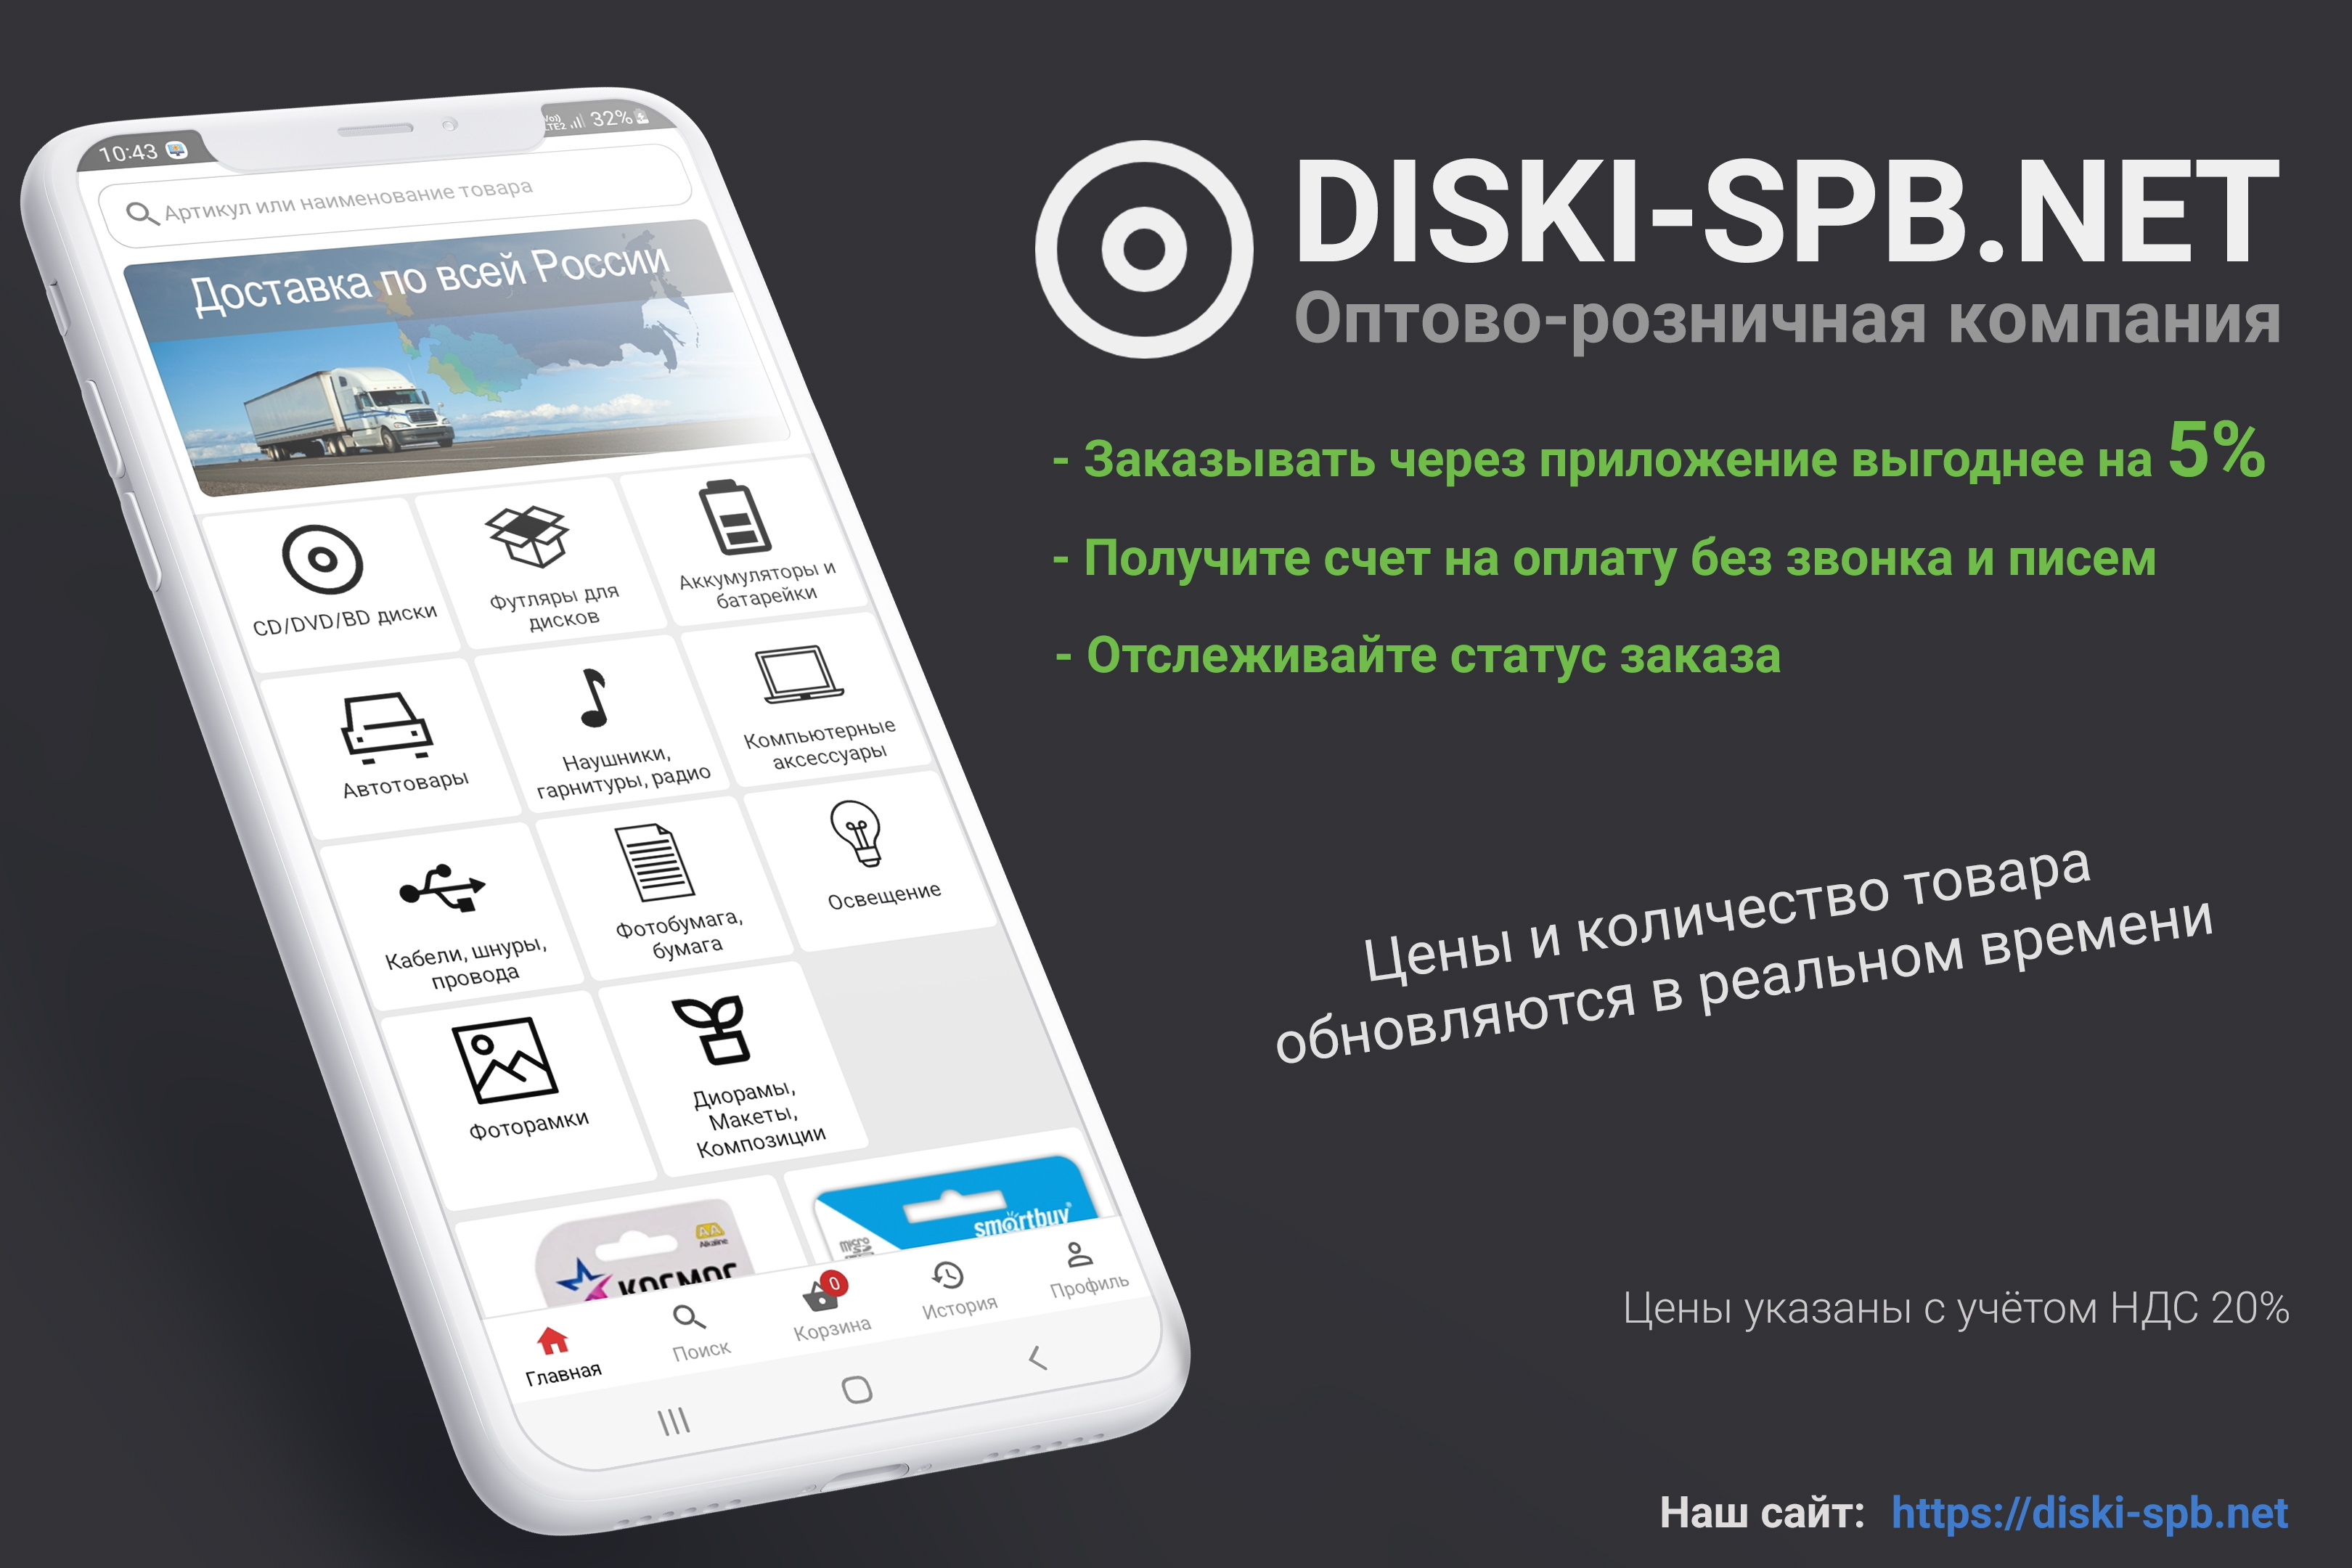 Изображение: DISKI-SPB.NET оптово-розничная компания